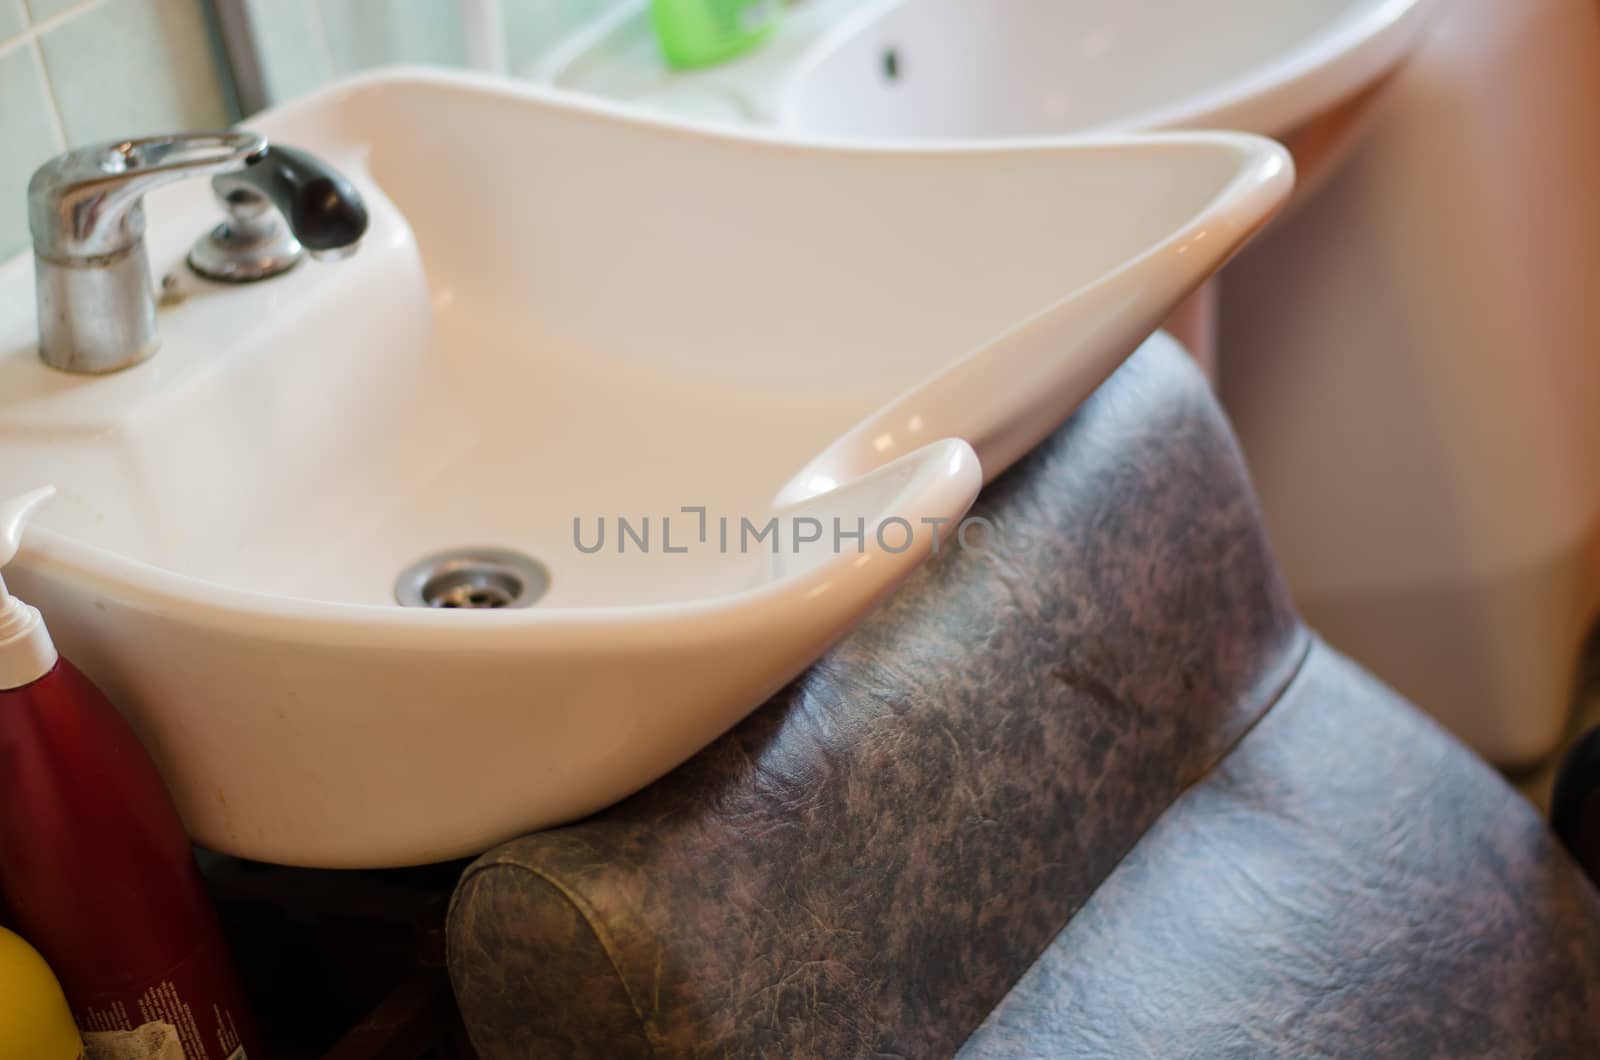 ceramic sink at hairdressing salon by sauletas